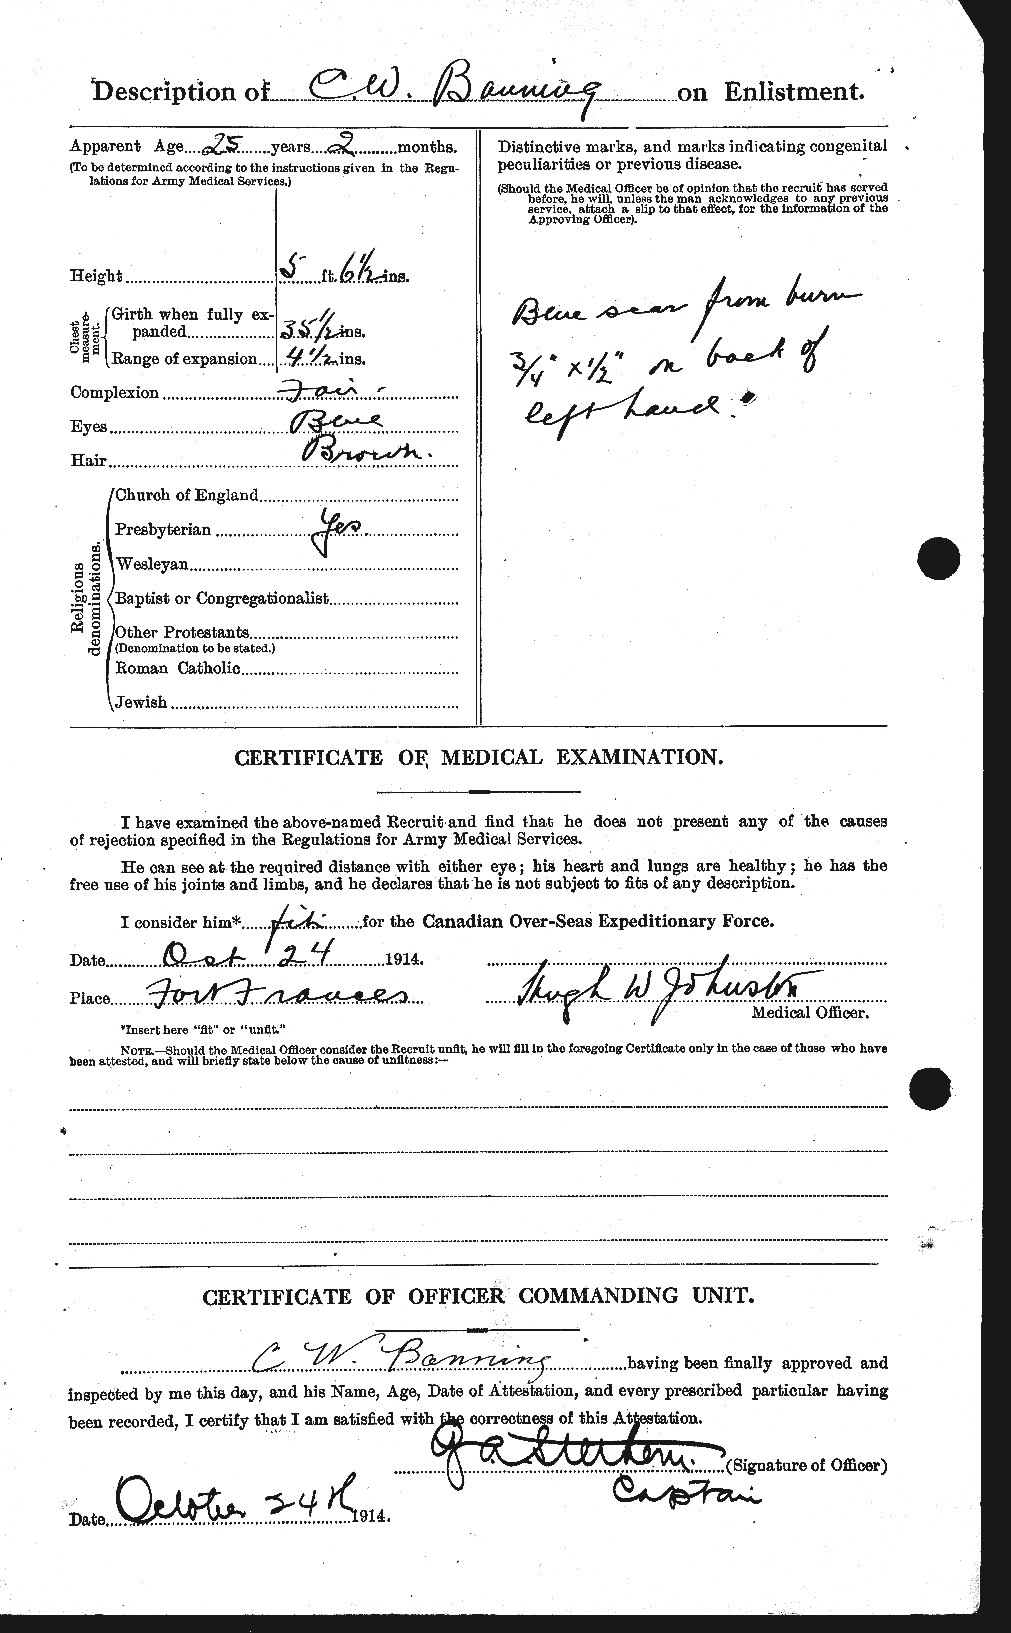 Dossiers du Personnel de la Première Guerre mondiale - CEC 224832b